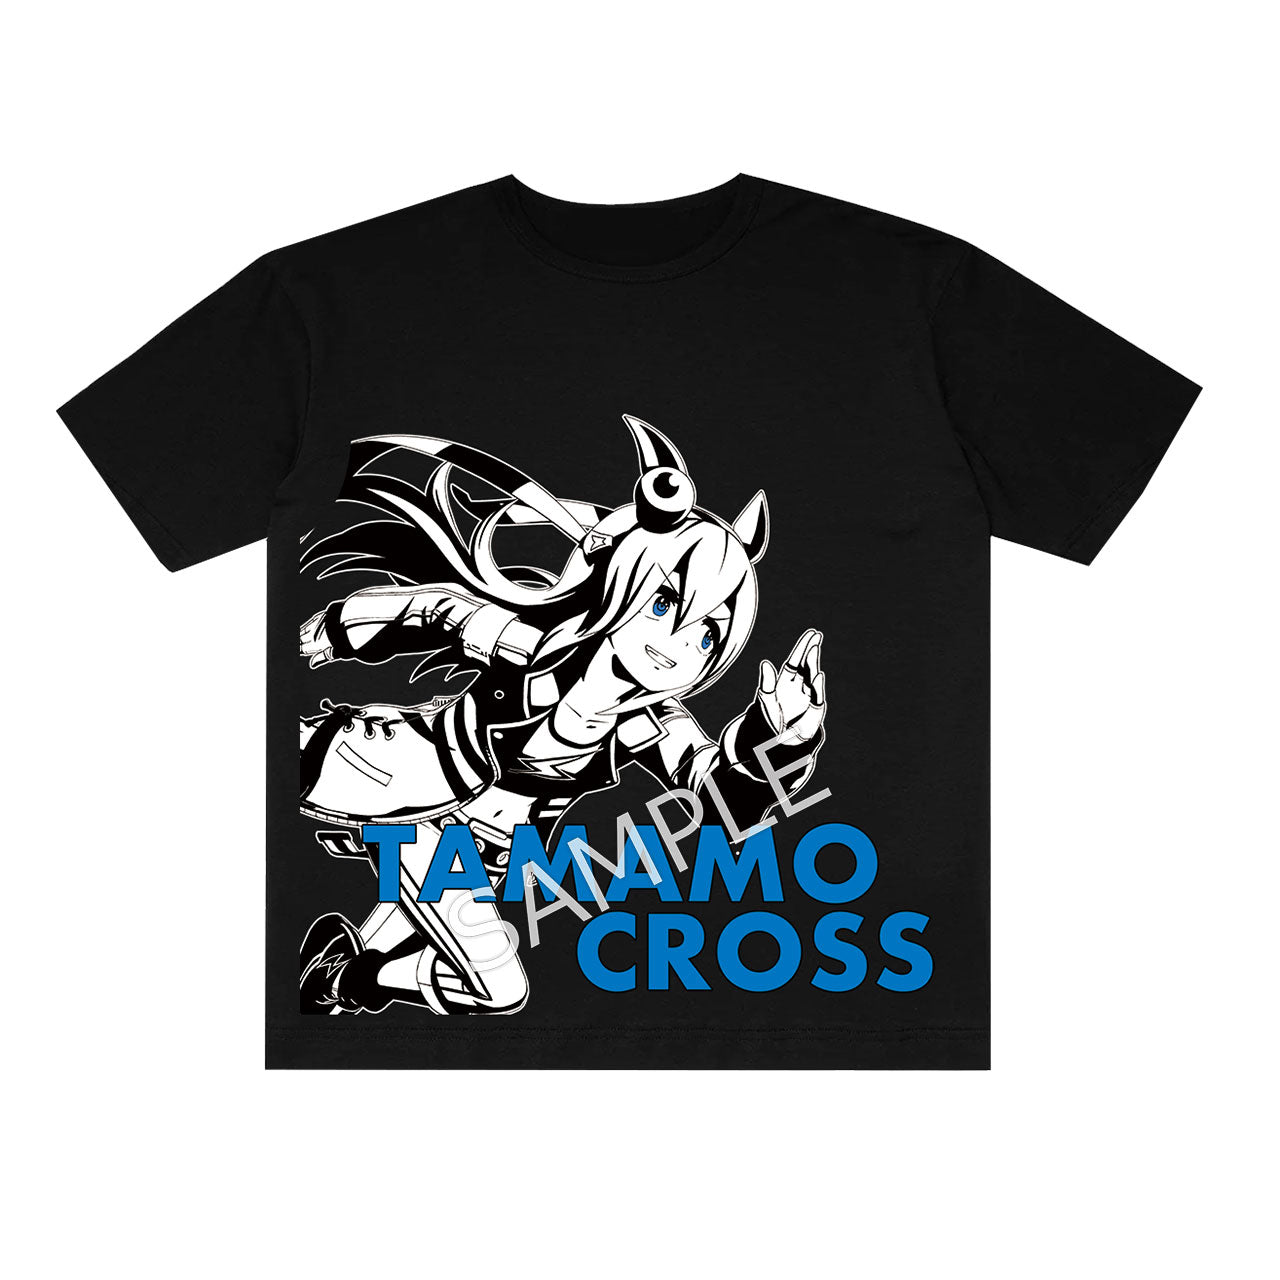 ウマ娘 プリティーダービー 公式BIGサイズTシャツ【タマモクロス 